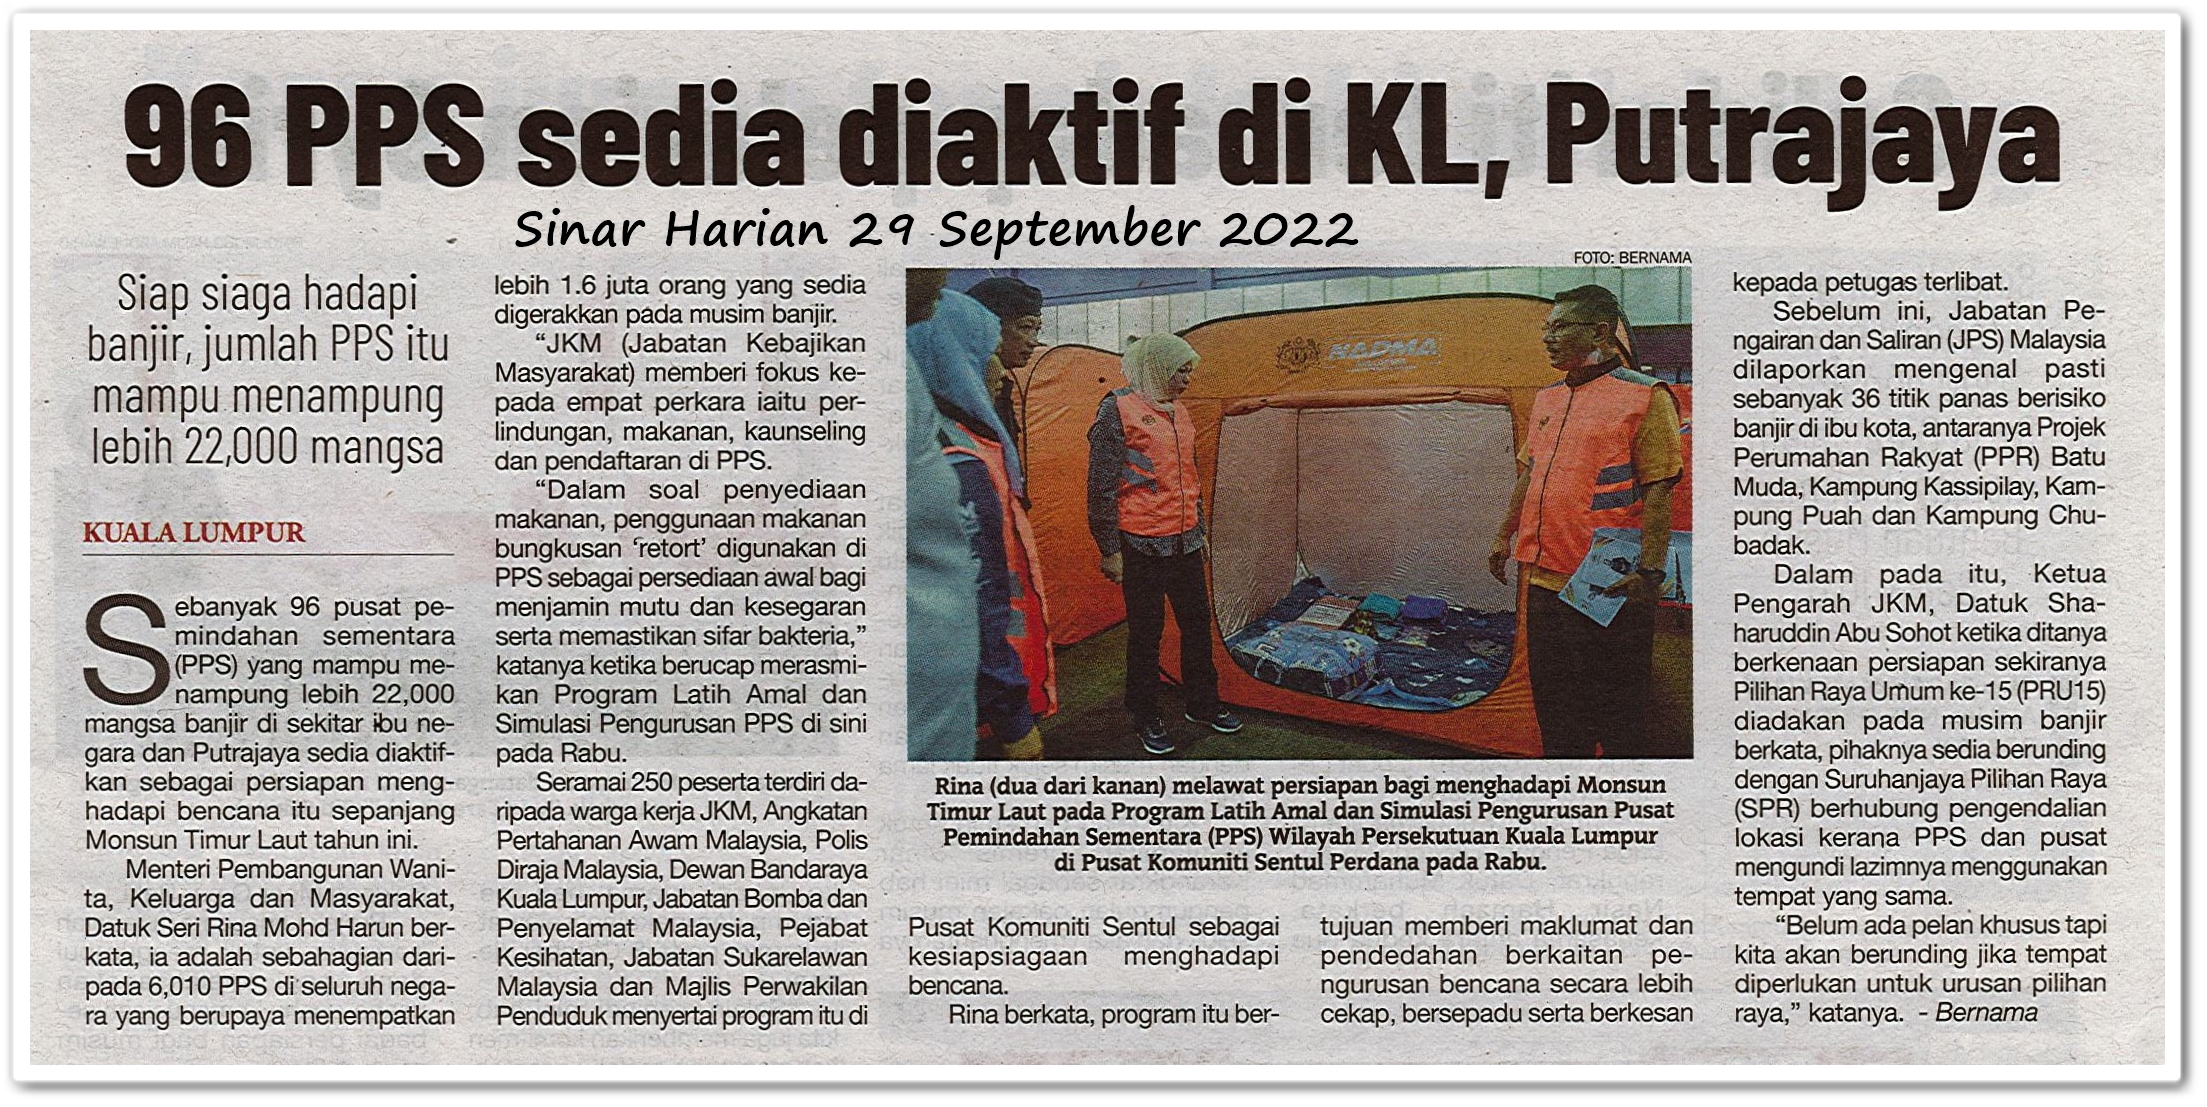 96 PPS sedia diaktif di KL, Putrajaya  ; Siap siaga hadapi banjir, jumlah PPS itu mampu menampung lebih 22,000 mangsa - Keratan akhbar Sinar Harian 29 September 2022